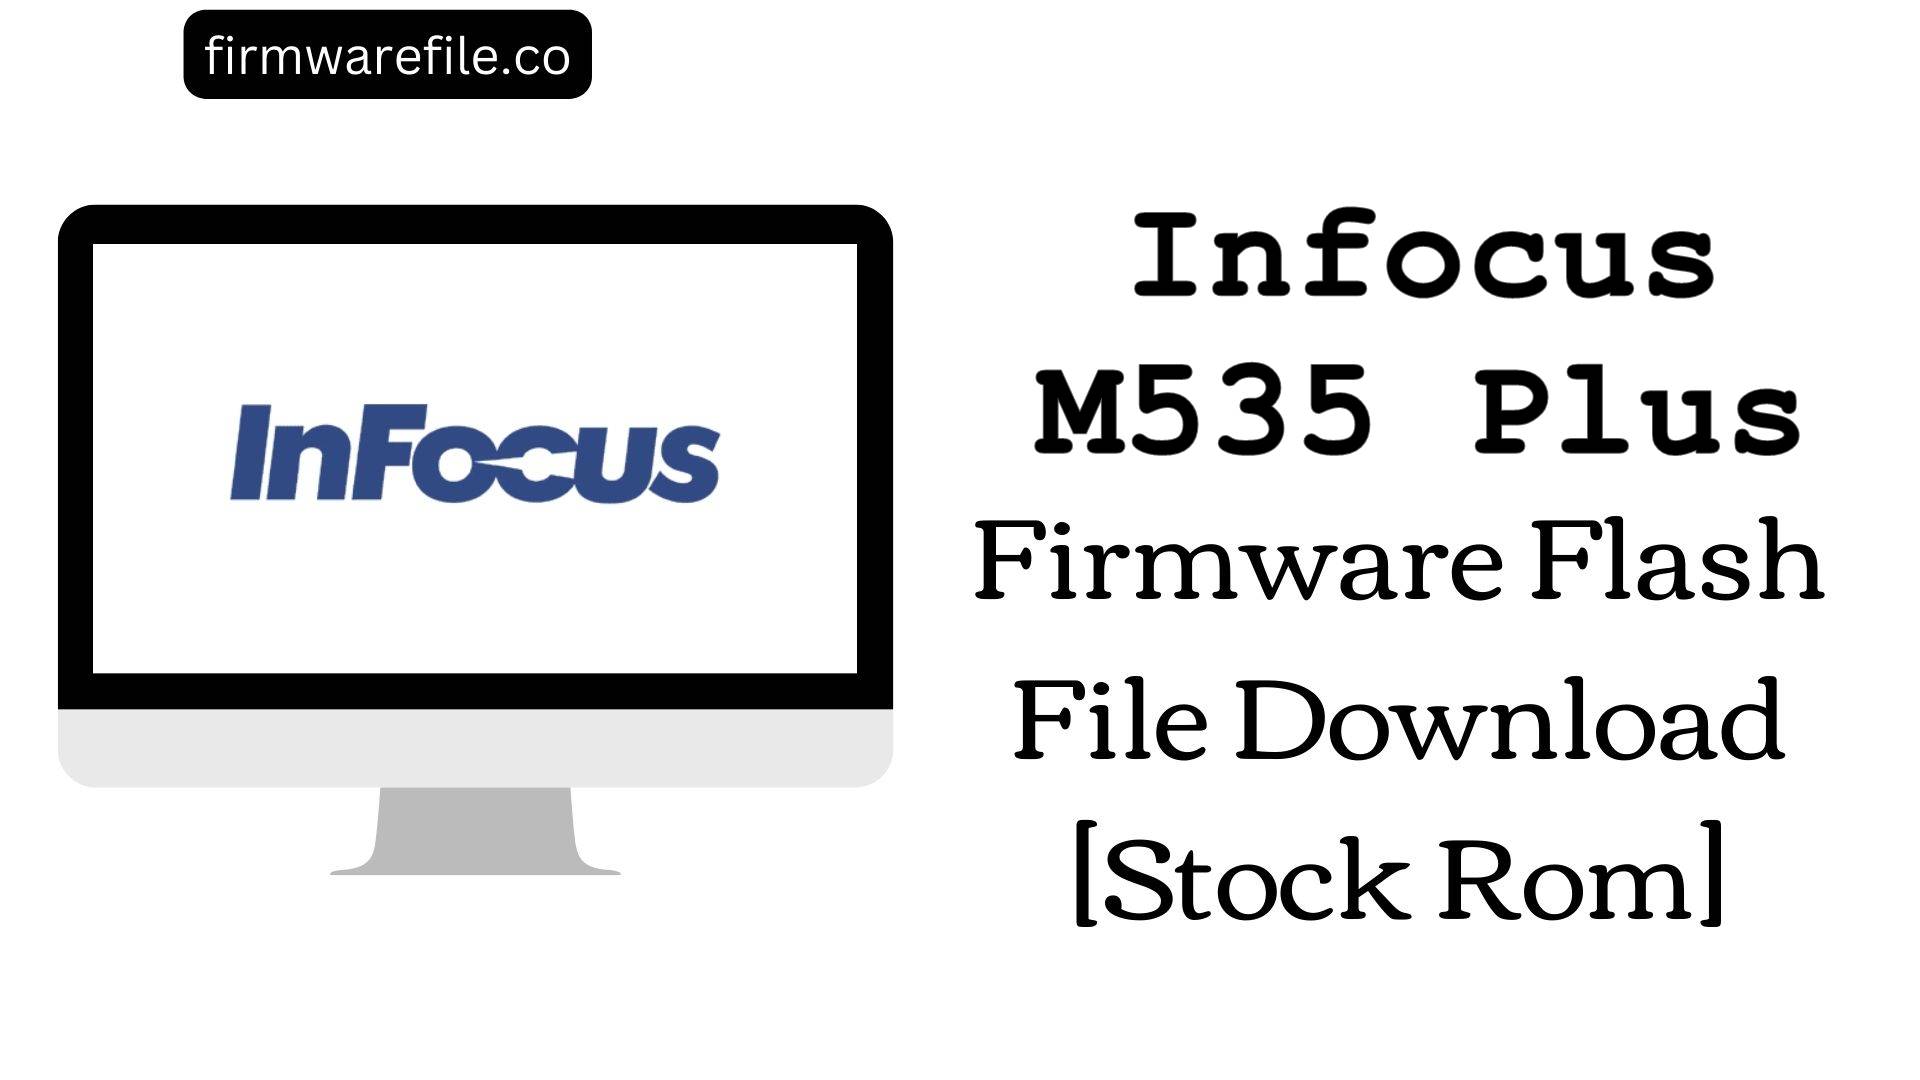 Infocus M535 Plus